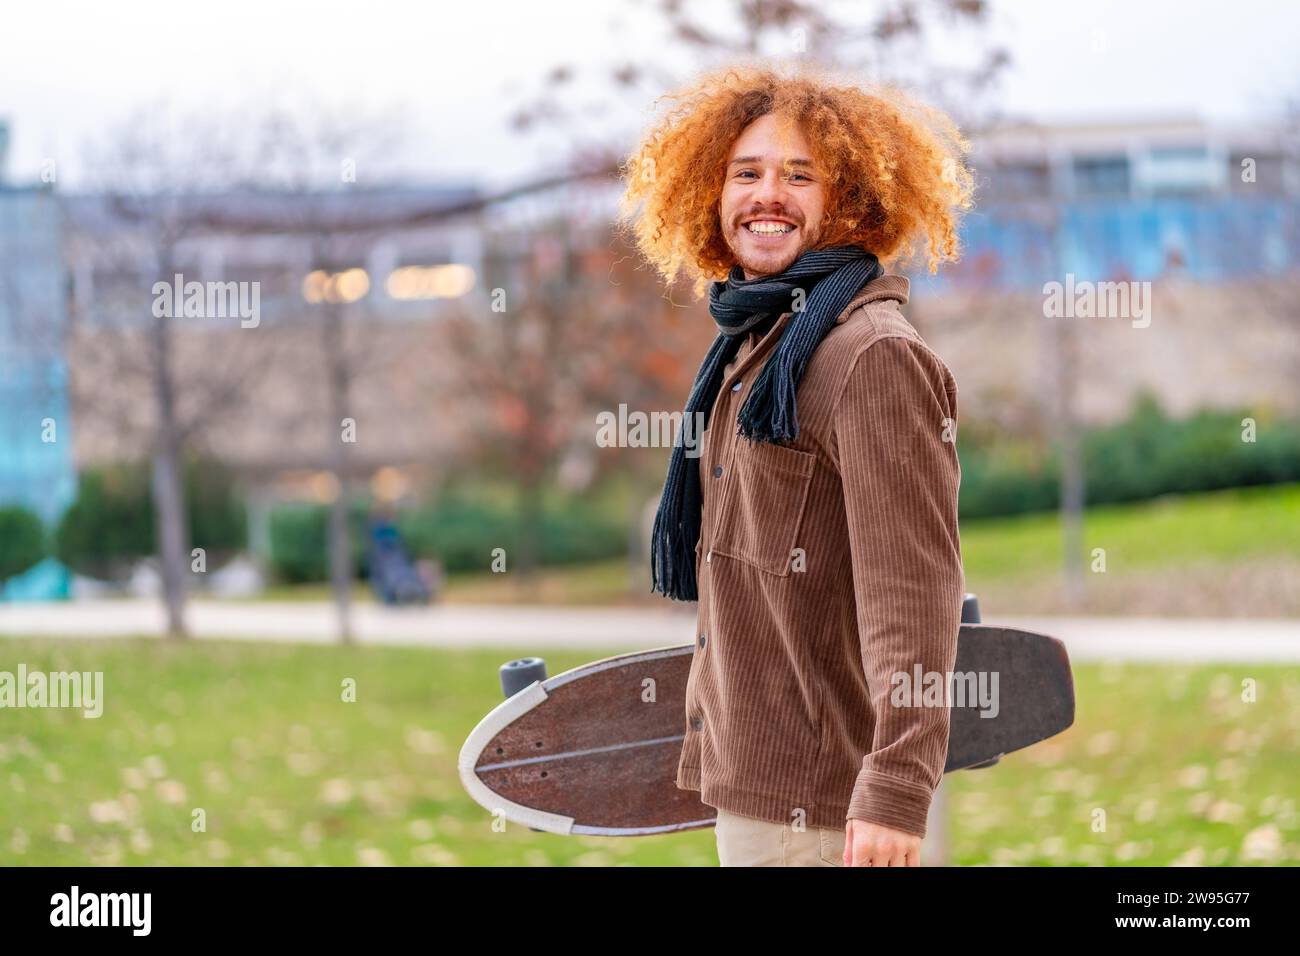 Porträt eines alternativen Mannes mit Skateboard, der in die Kamera lächelt und auf einem Park steht Stockfoto